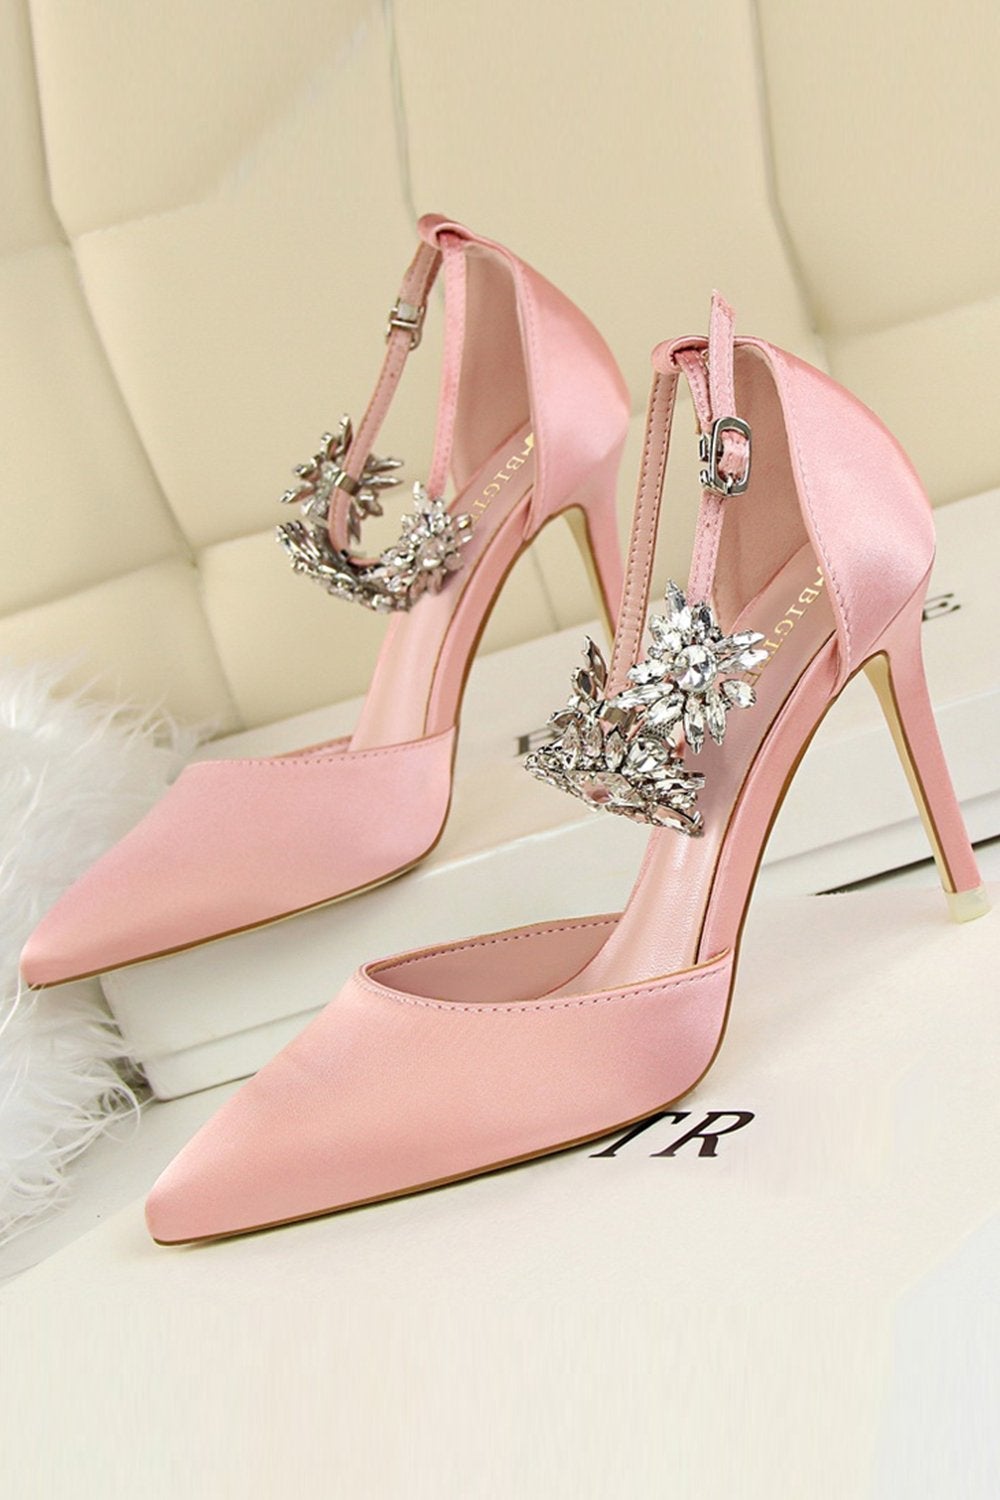 Anne Michelle Silver Sparkly Glitter Platform Heels Sz 7 Prom Wedding  Homecoming | eBay